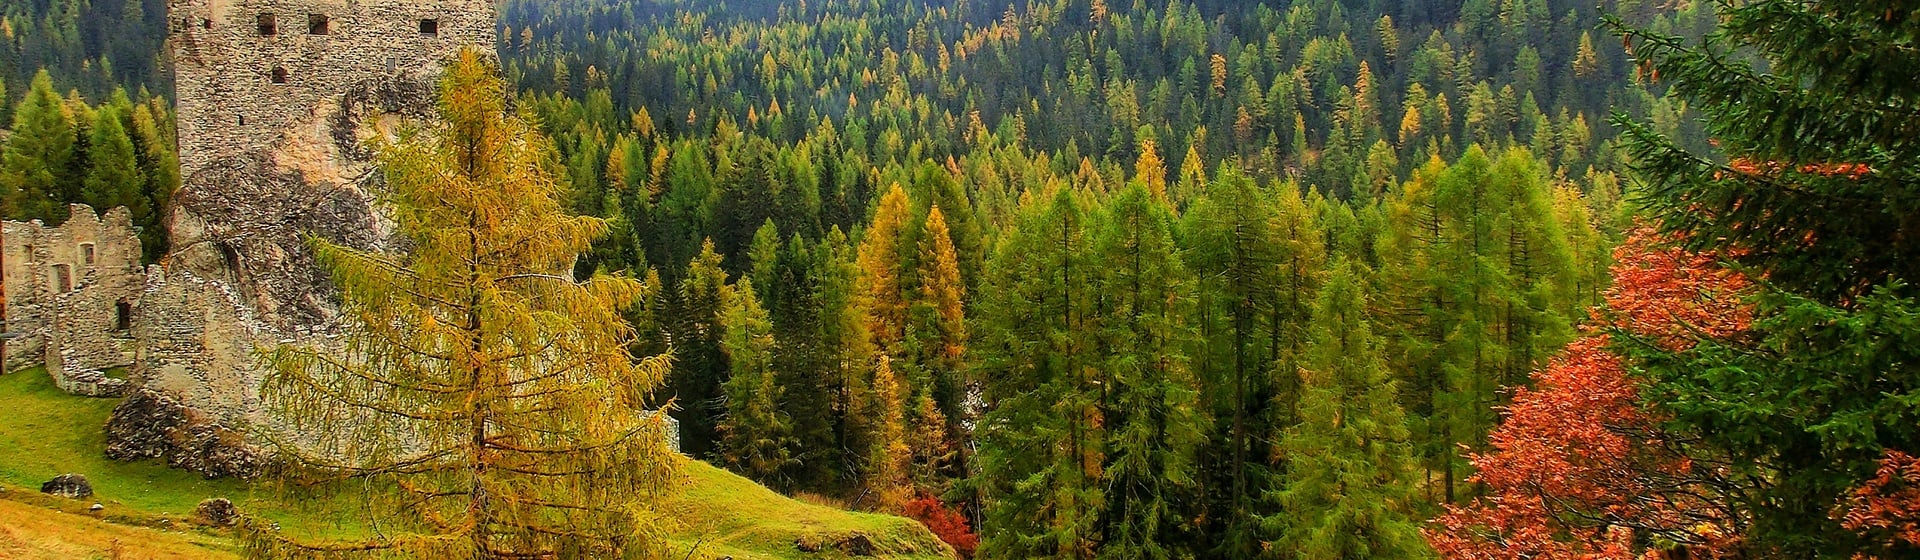 Herbst in den Dolomiten von Arabba